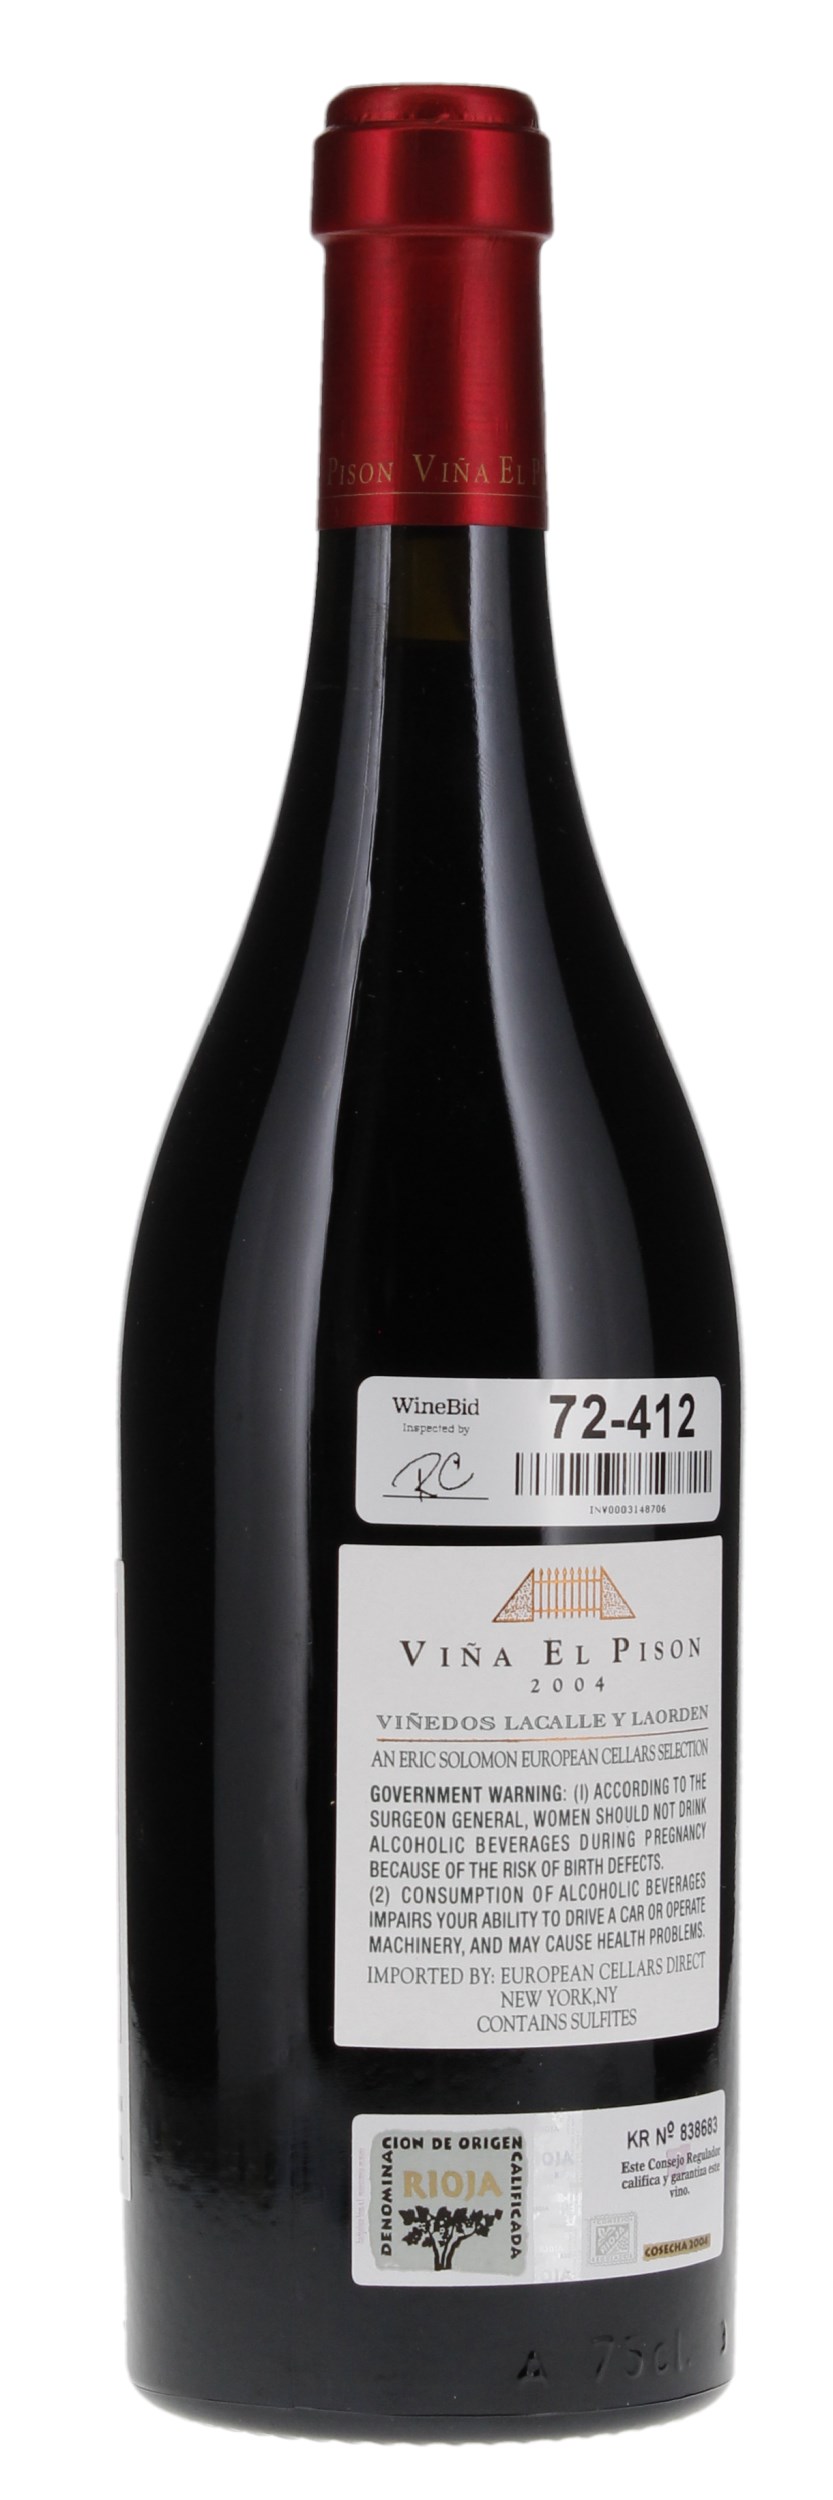 2004 Artadi Rioja Vina El Pison, 750ml